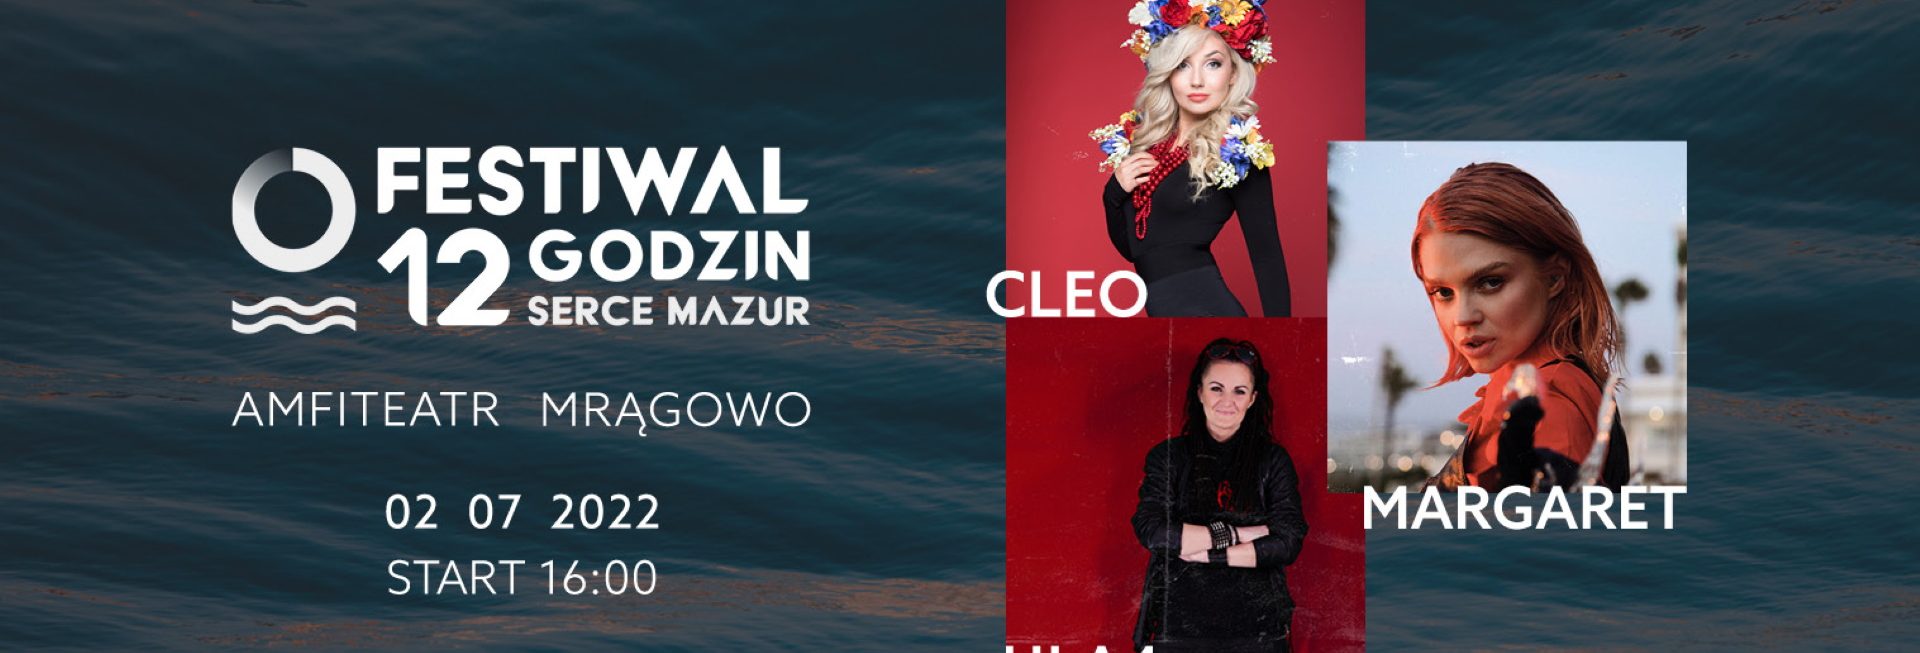 Plakat graficzny zapraszający do Mrągowa na 3. edycję Festiwalu 12 Godzin Serce Mazur Mrągowo 2022.  